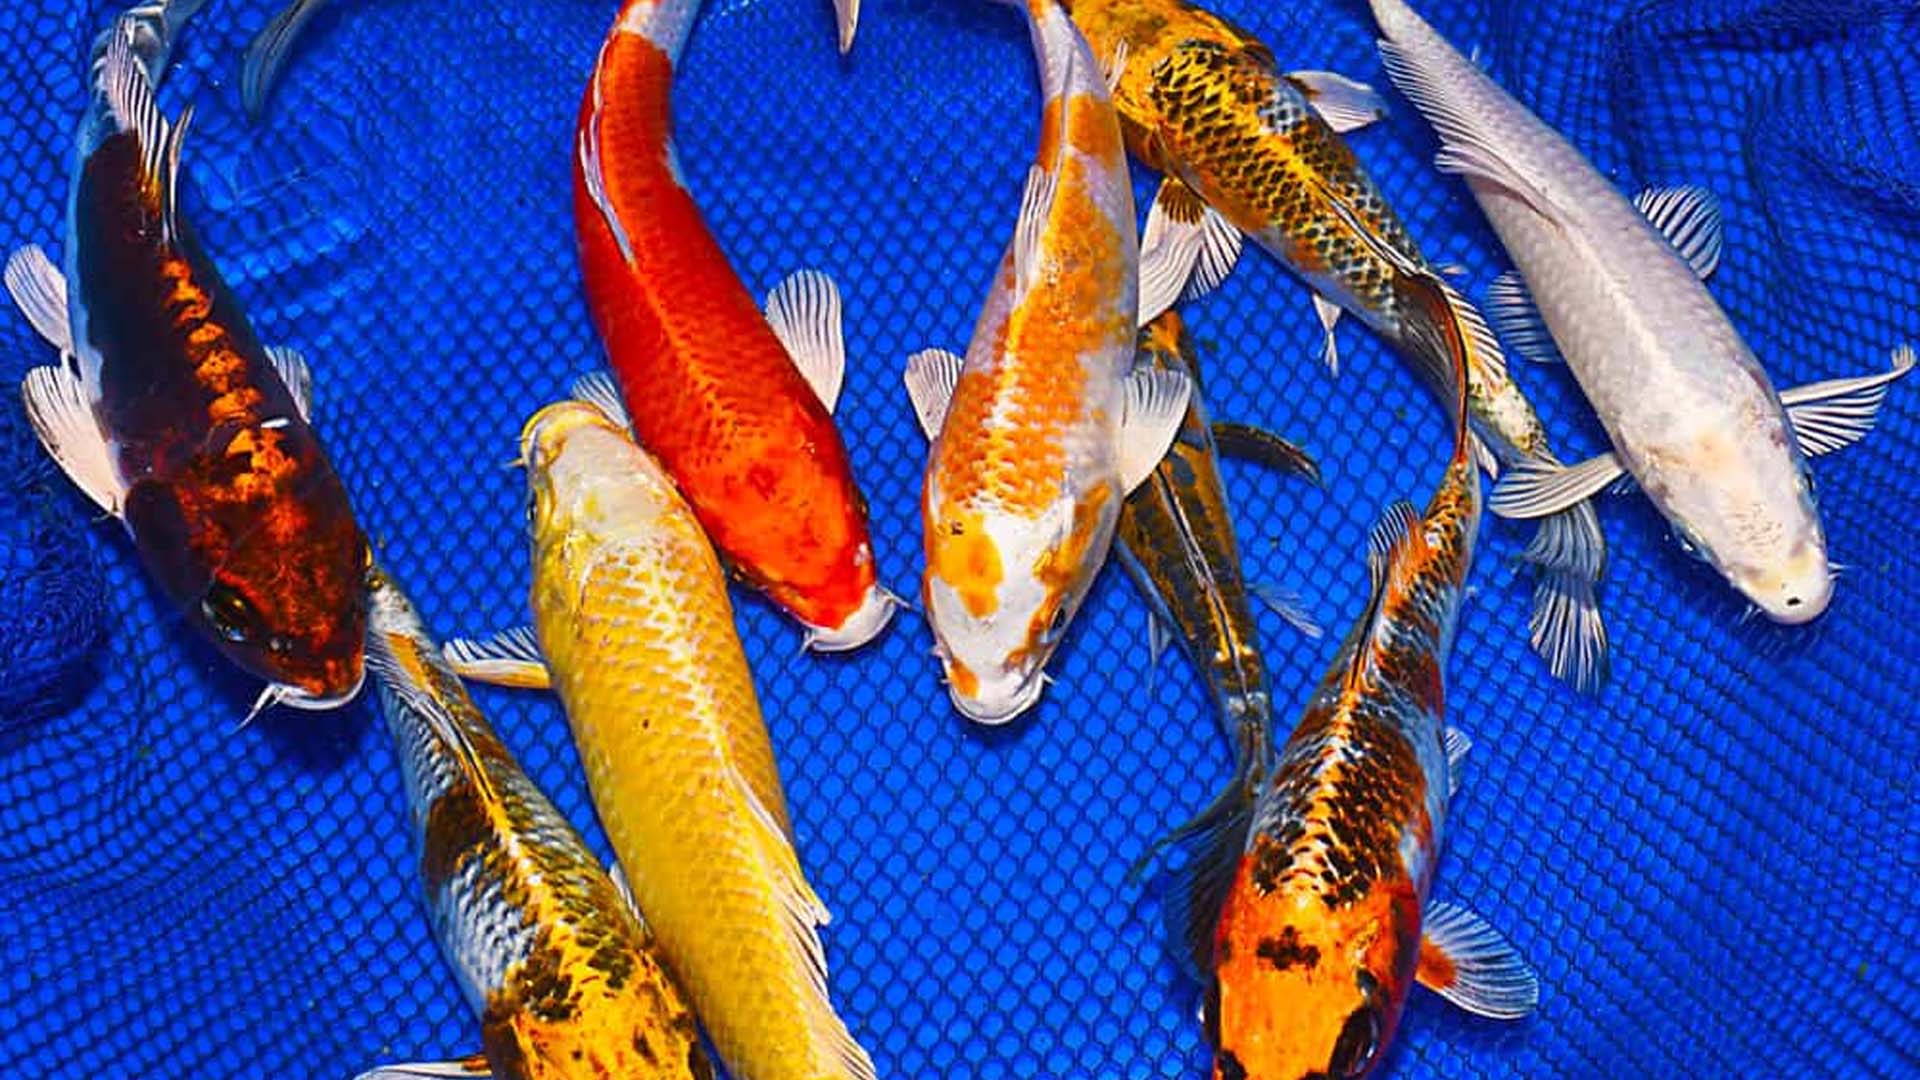 TP Hồ Chí Minh: Kỹ thuật nuôi cá chép Nhật tại Việt Nam